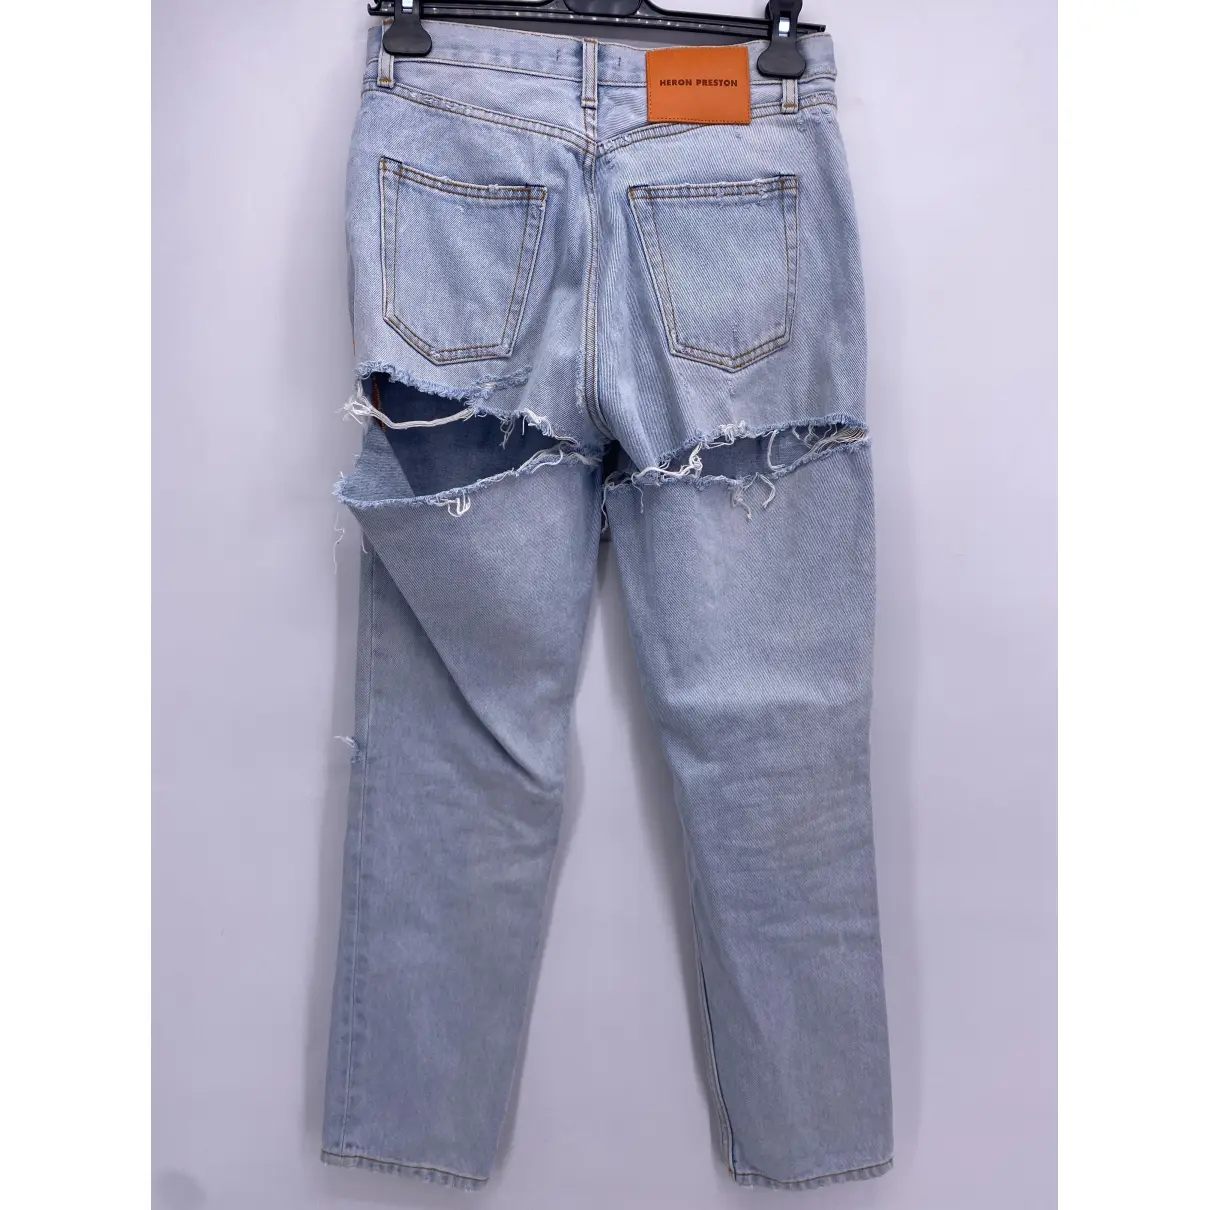 Buy Heron Preston Large jeans online